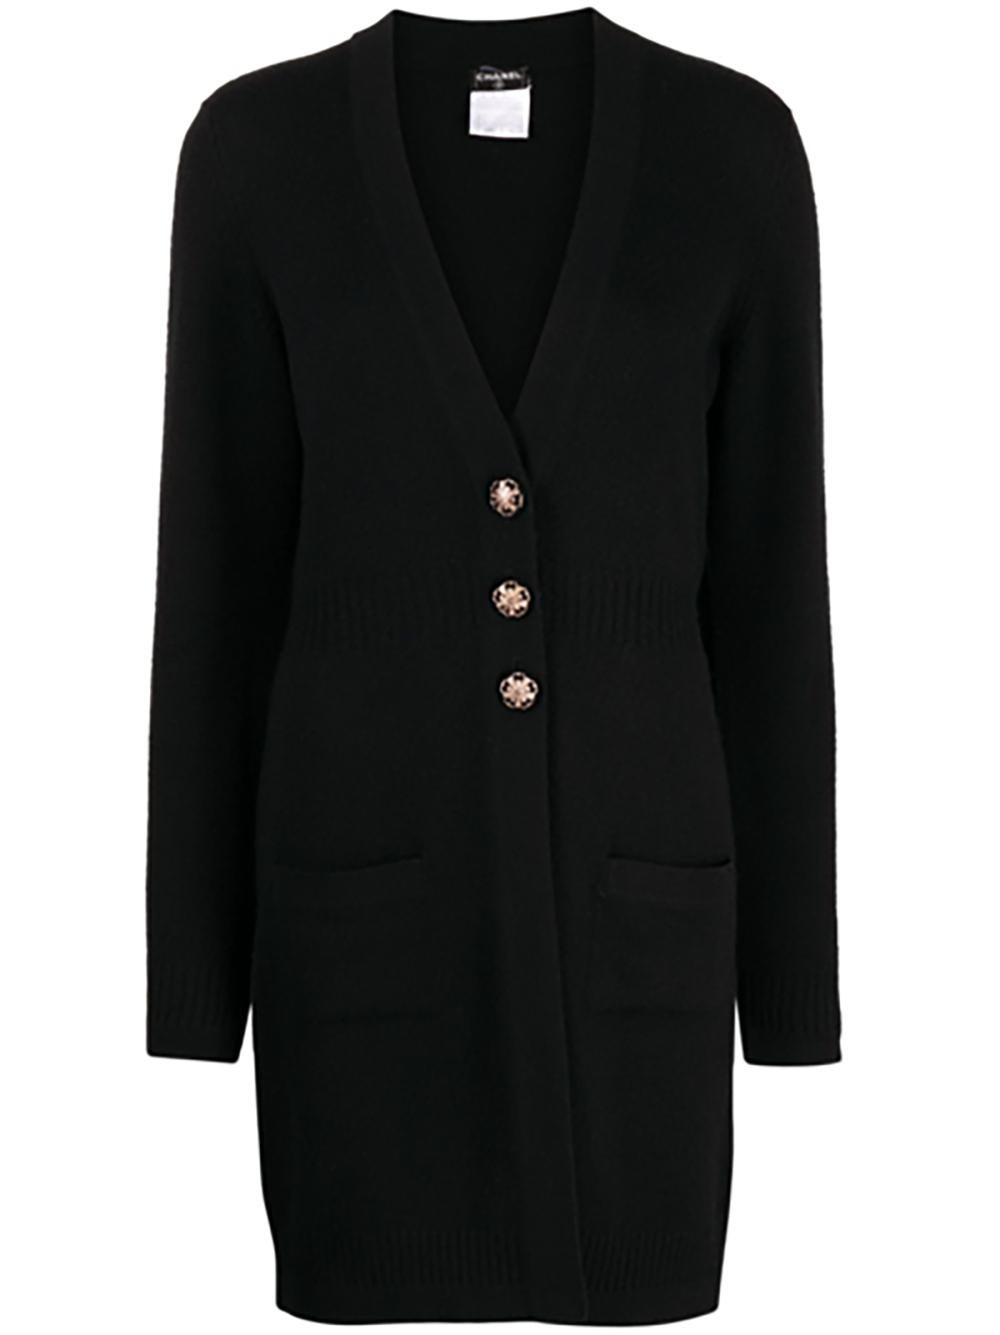 Manteau-cardi en cachemire noir Chanel avec boutons CC jewel en métal doré.
Taille 38 FR. Condit est en parfait état, sans aucun signe d'usure.